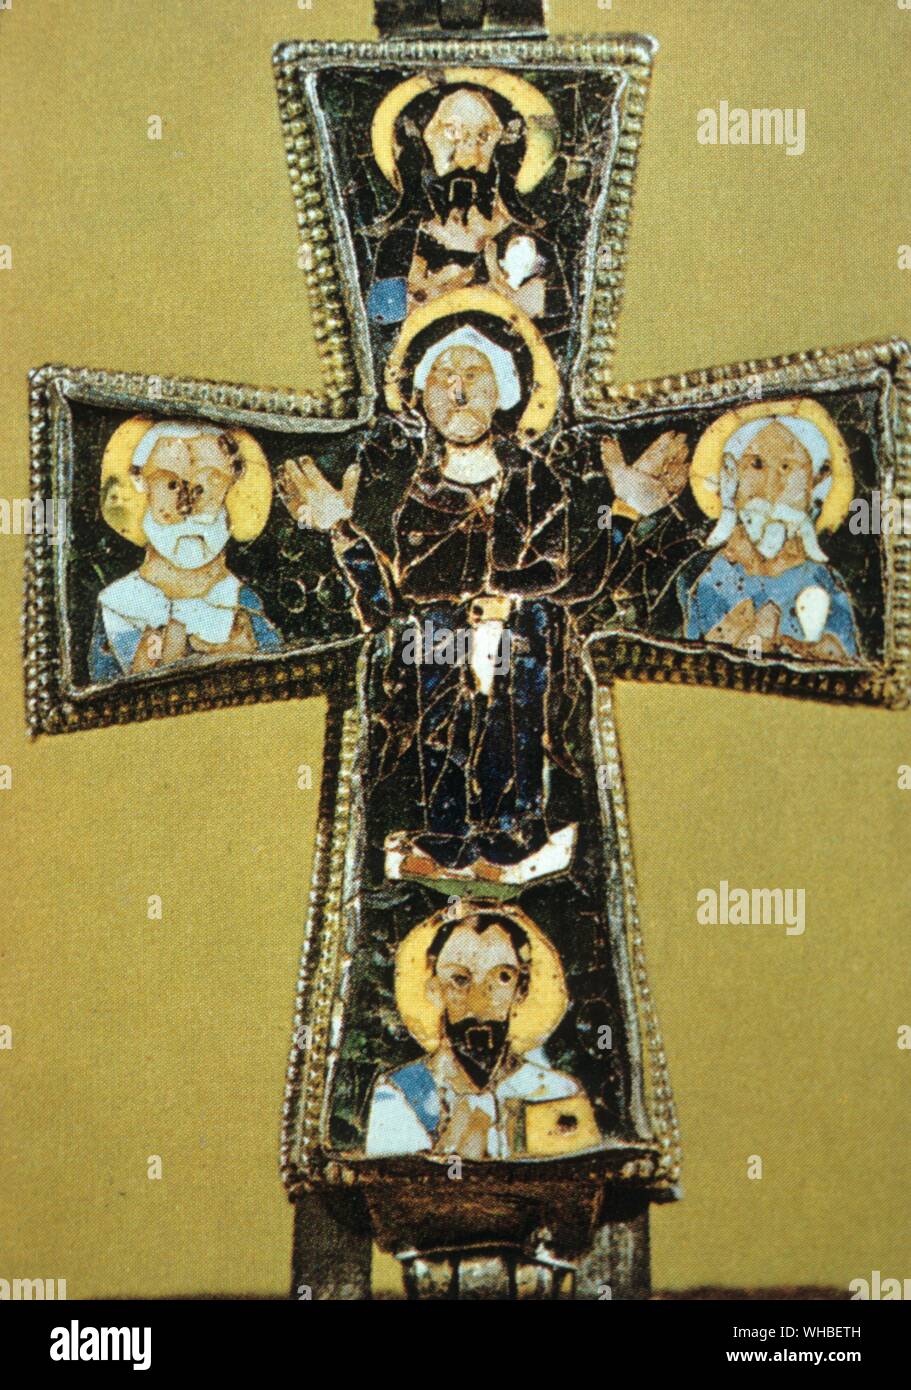 Das Beresford Hoffnung Kreuz: ein hohler Reliquiar Kreuz der byzantinischen Kunst. Die Reliquie enthielt es war wahrscheinlich Fragmente des wahren Kreuzes. Victoria & Albert Museum, London. Stockfoto